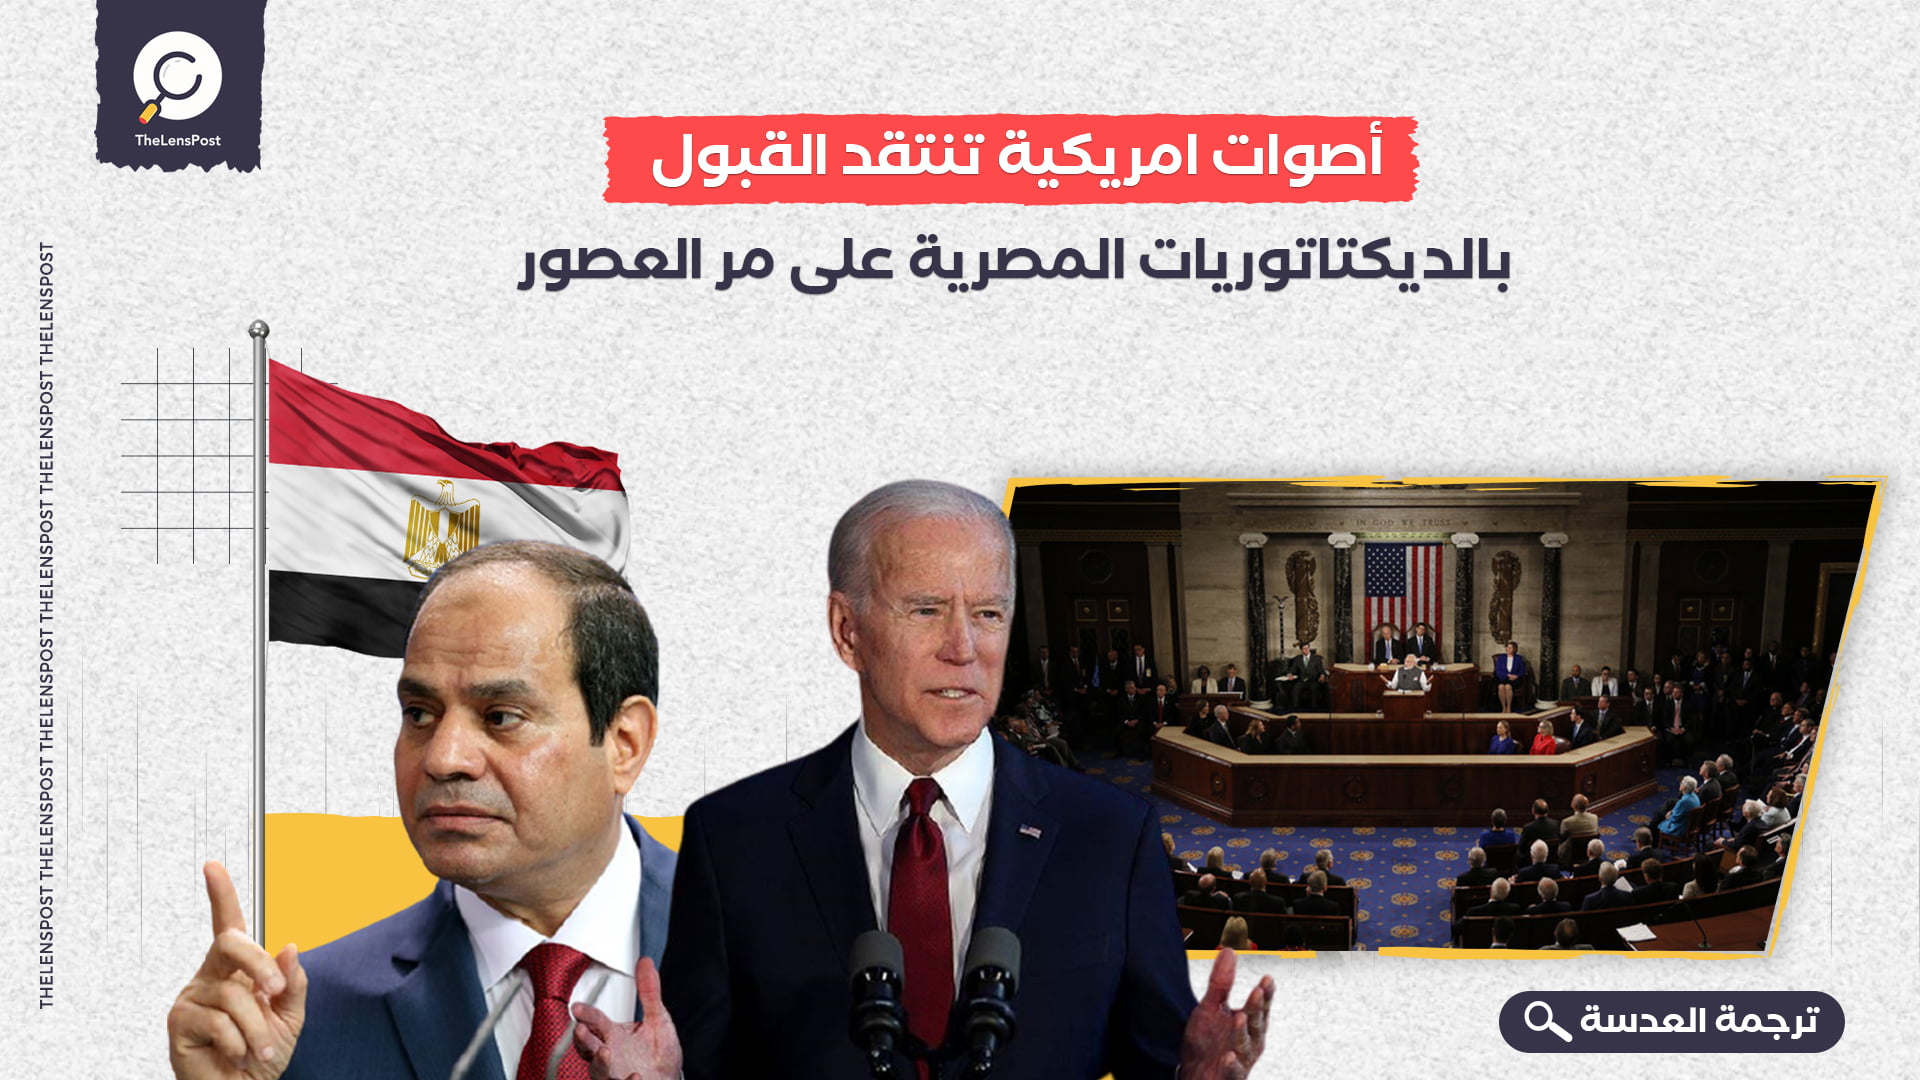 أصوات امريكية تنتقد القبول بالديكتاتوريات المصرية على مر العصور